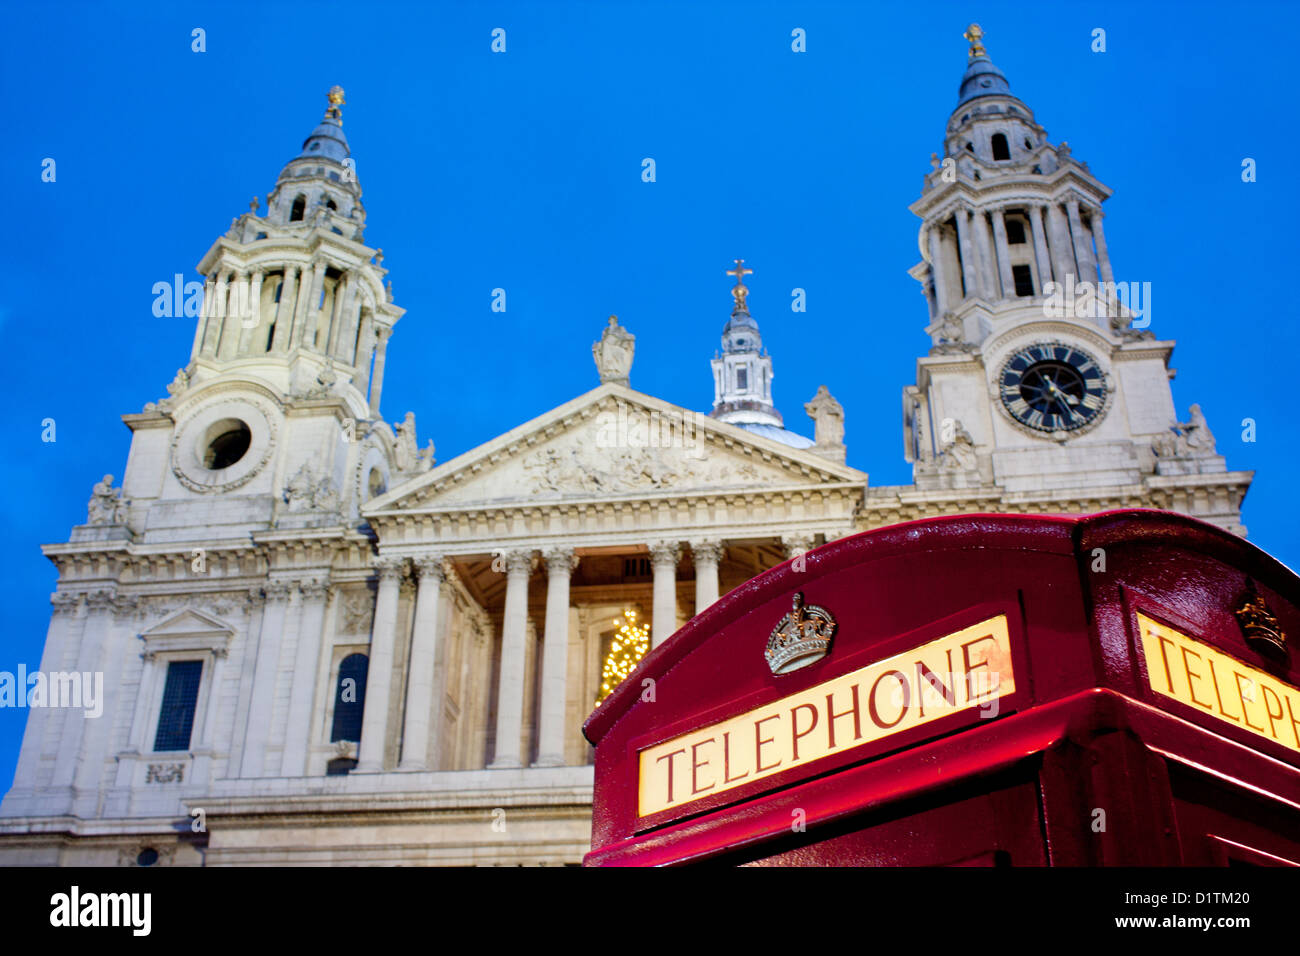 St Paul's à Cathedrat nuit / crépuscule / Crépuscule avec téléphone rouge traditionnel fort en premier plan Ville de London England UK Banque D'Images